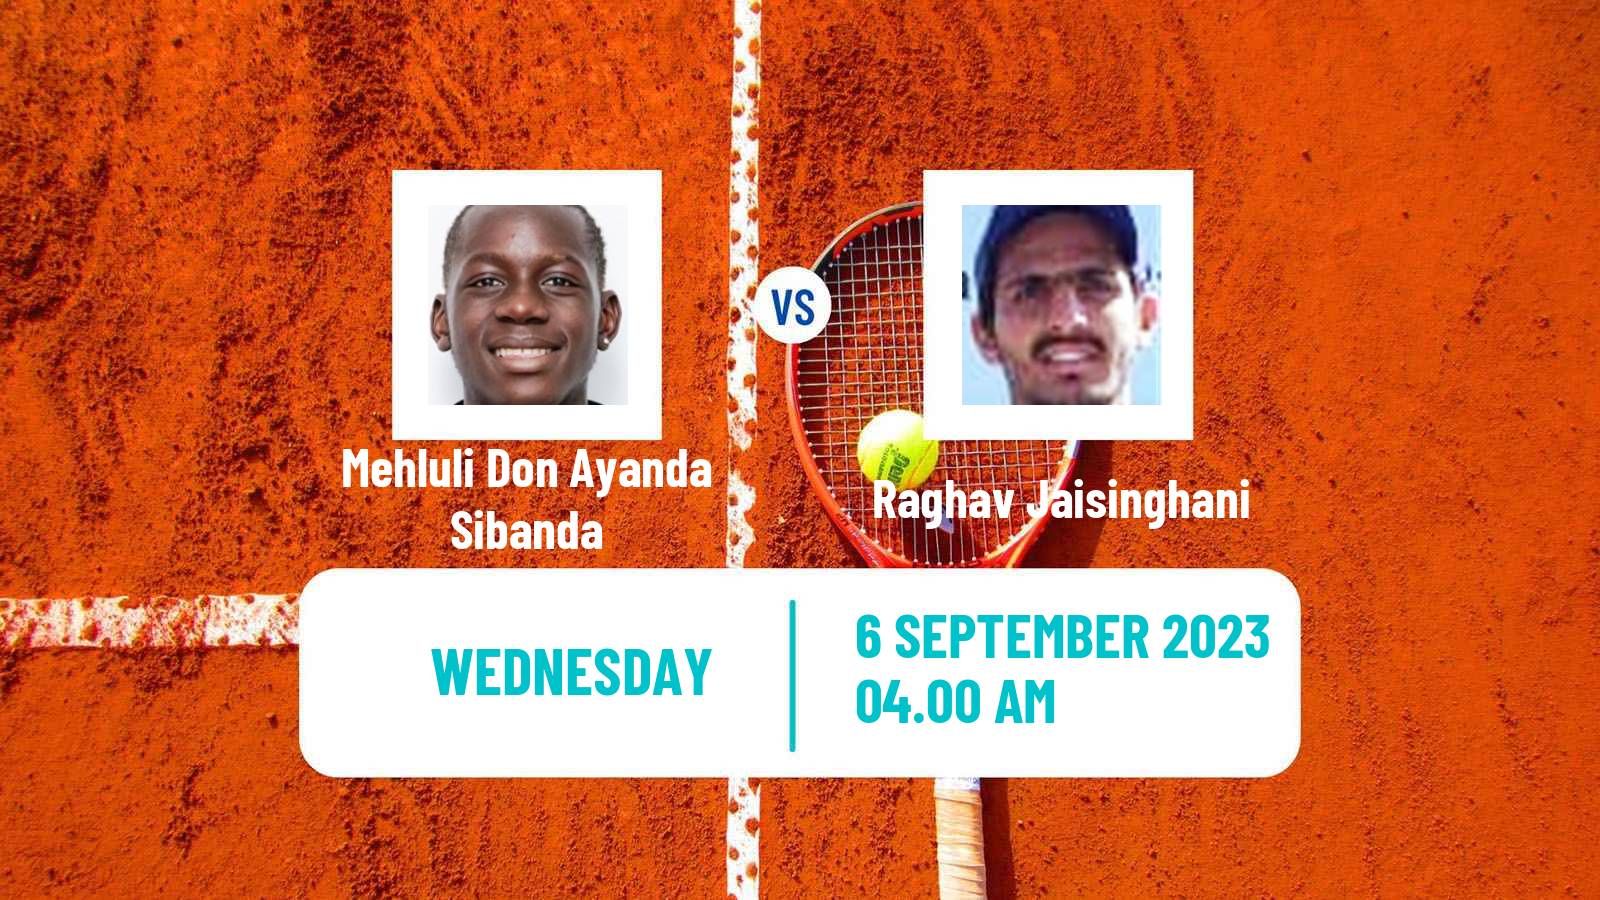 Tennis ITF M25 Kigali Men Mehluli Don Ayanda Sibanda - Raghav Jaisinghani